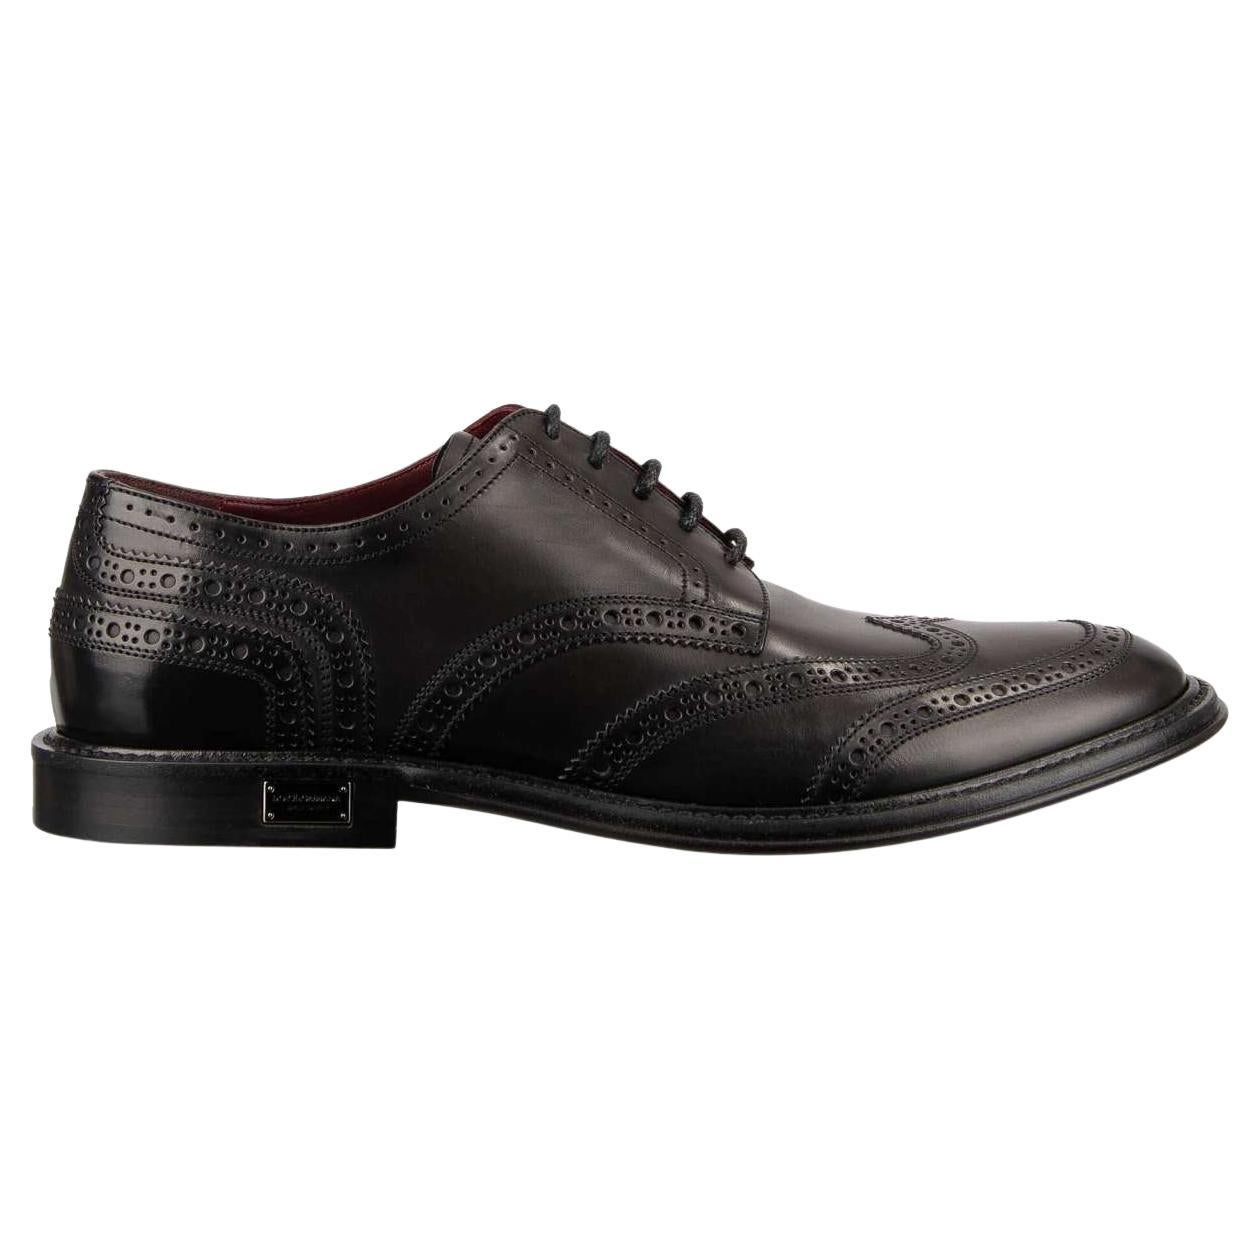 Dolce & Gabbana - DG Logo Formal Calf Leather Derby Shoes MARSALA Black EUR 41.5 For Sale